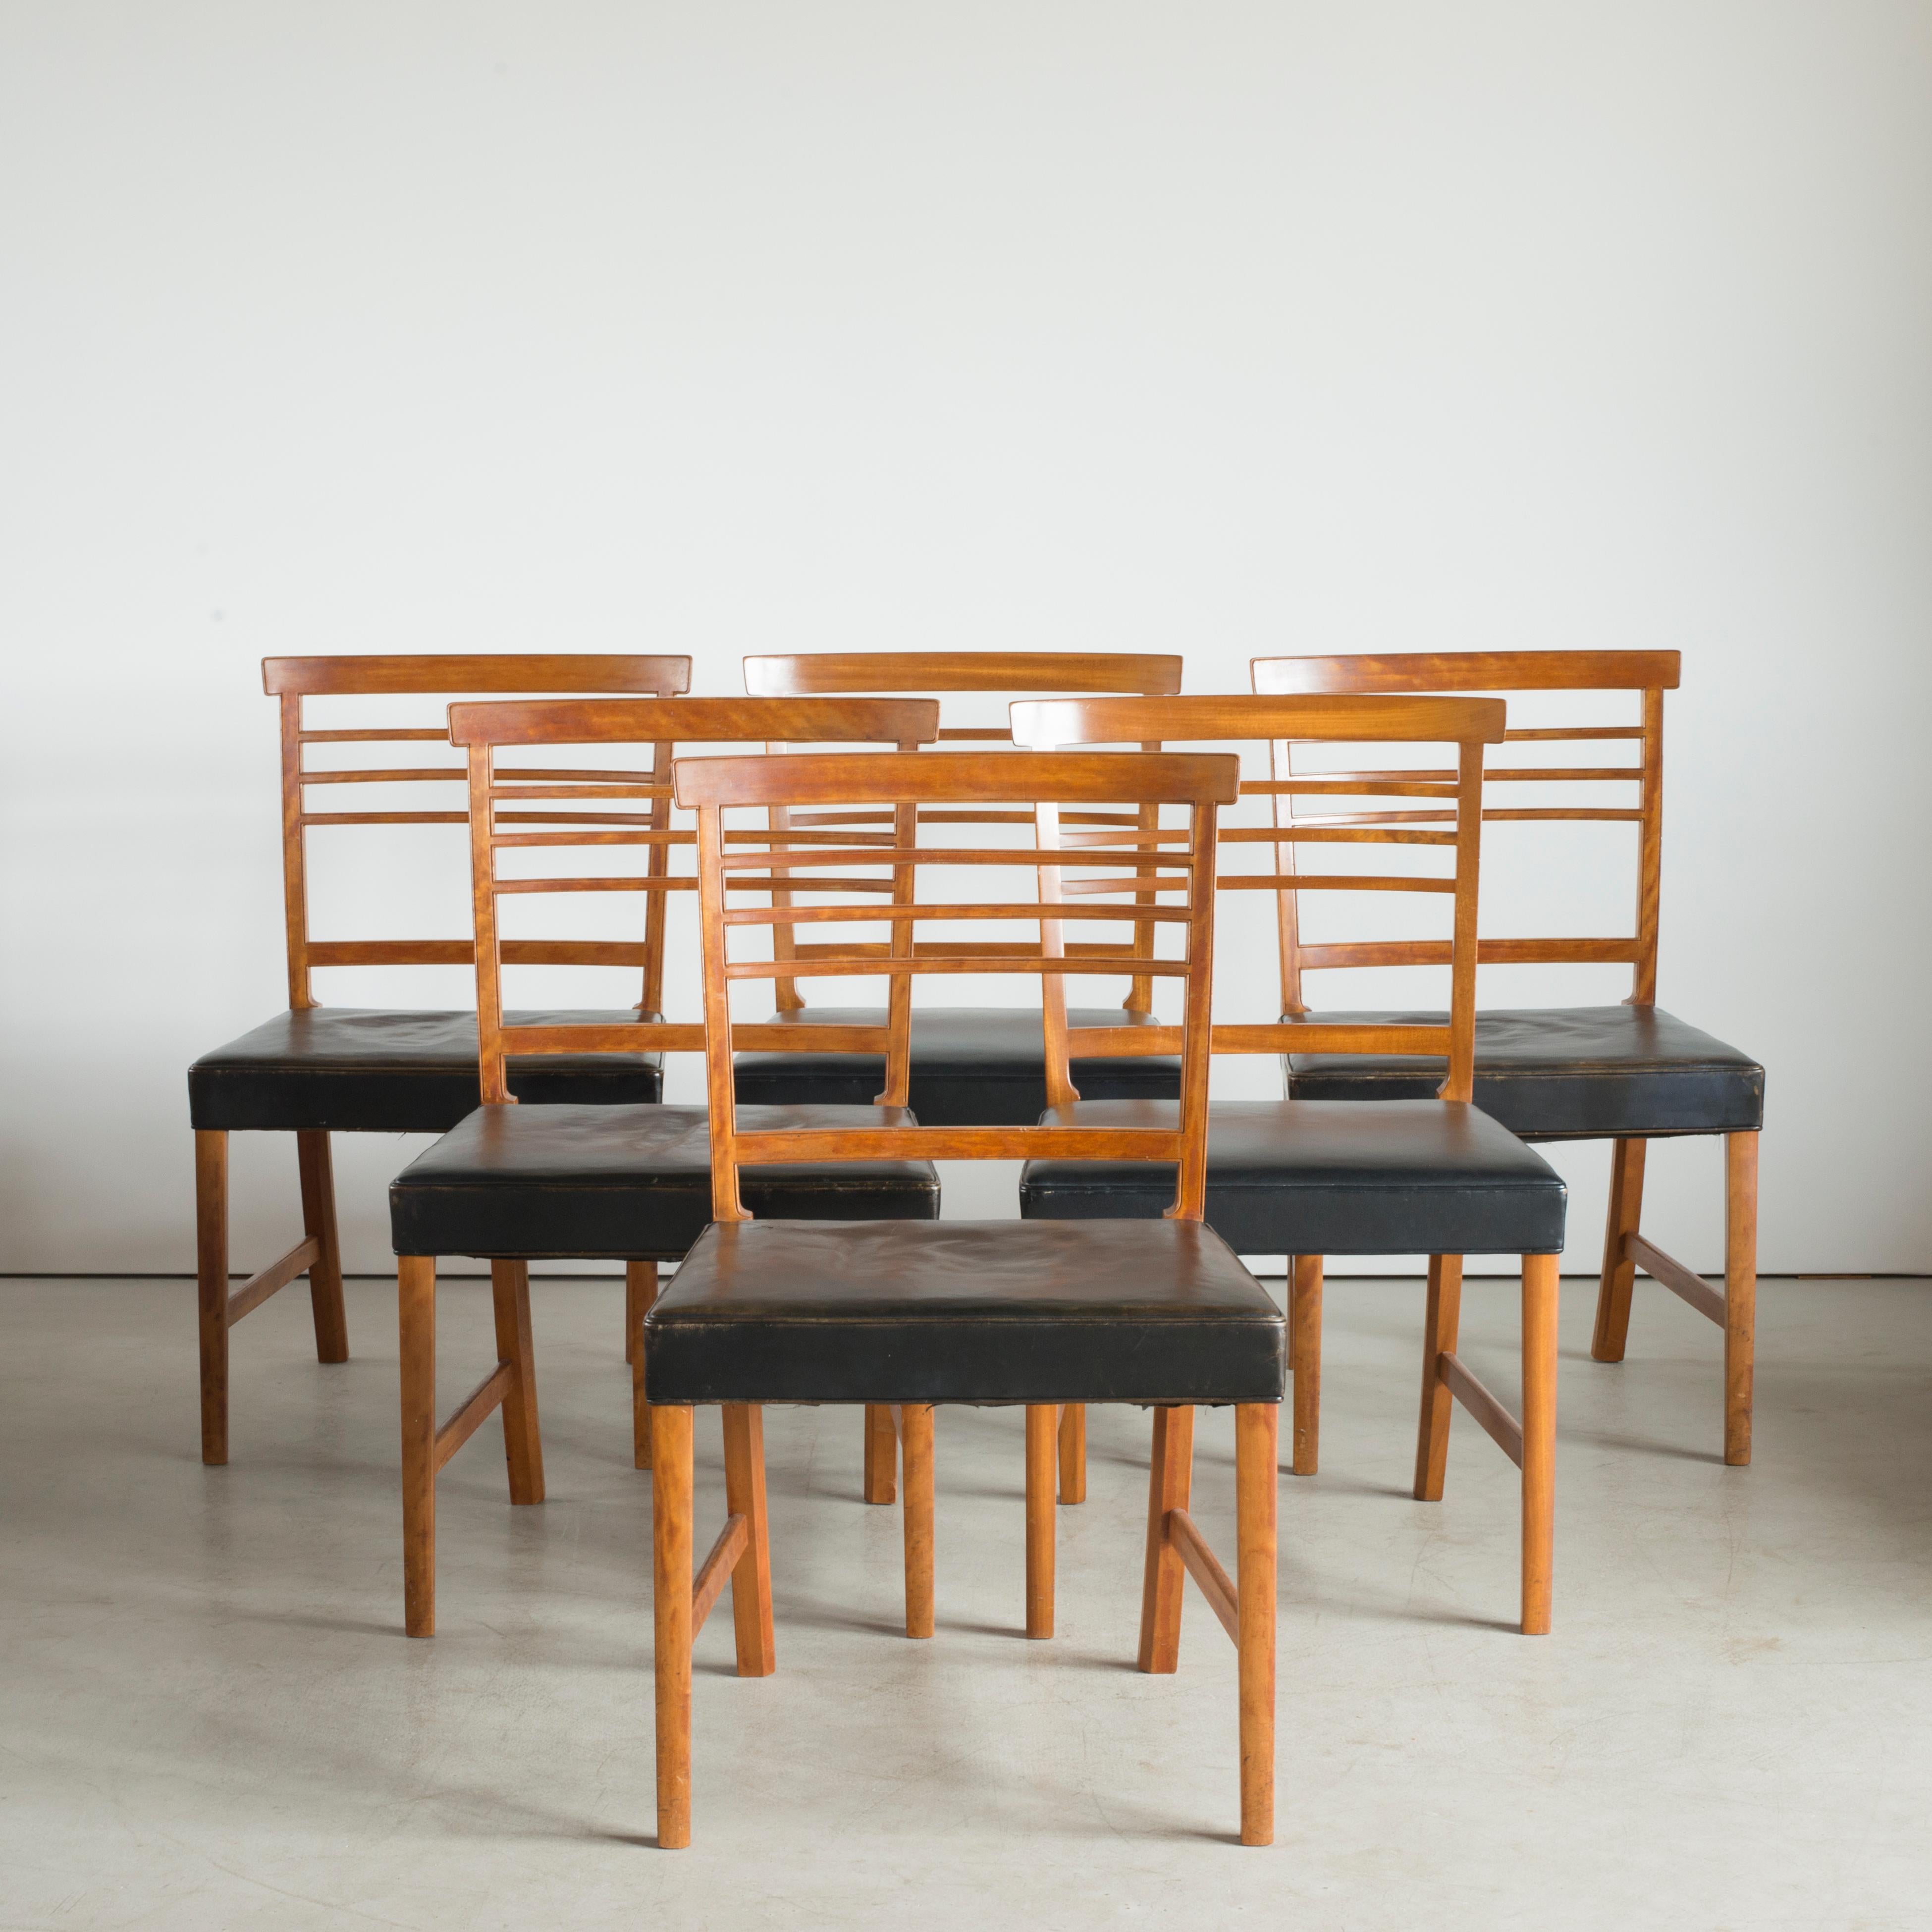 Ole Wanscher Satz von sechs Stühlen in Mahagoni mit Sitzen aus schwarzem Leder. Ausgeführt von A. J. Iversen, Kopenhagen, Dänemark.